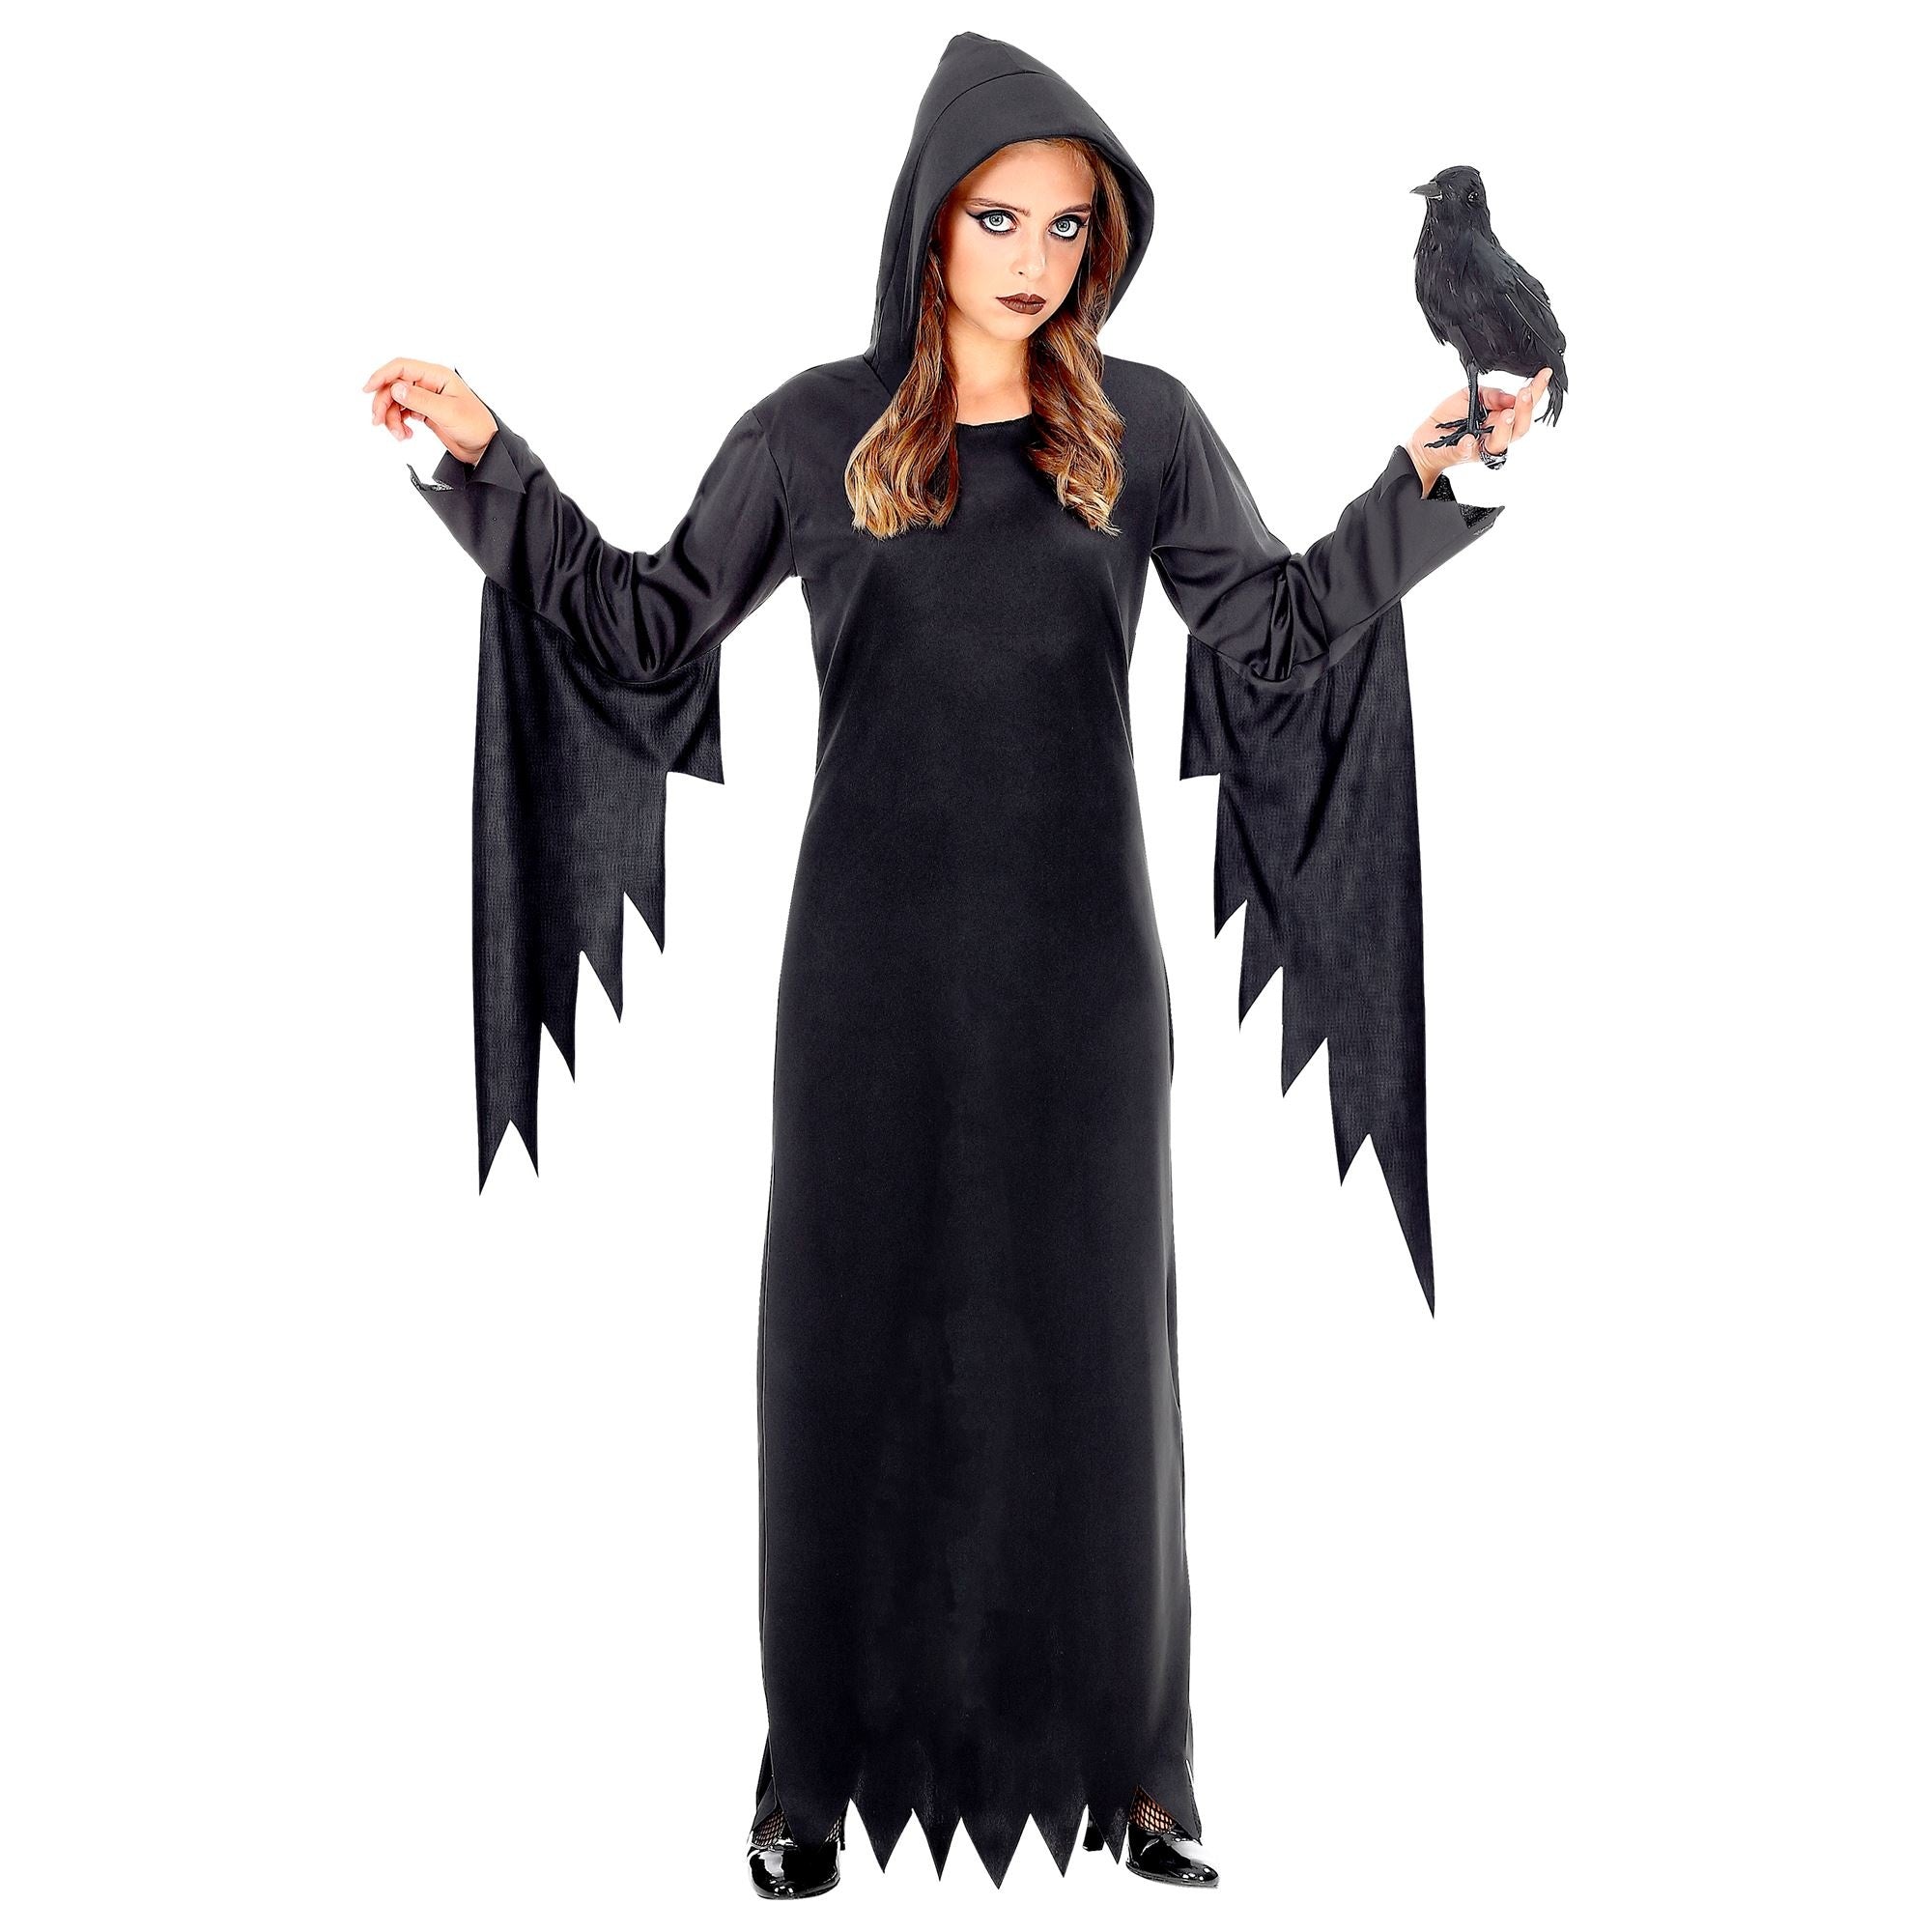 Widmann - Heks & Spider Lady & Voodoo & Duistere Religie Kostuum - Gotische Voodoo Koningin Duistere Zaken - Meisje - zwart - Maat 164 - Halloween - Verkleedkleding